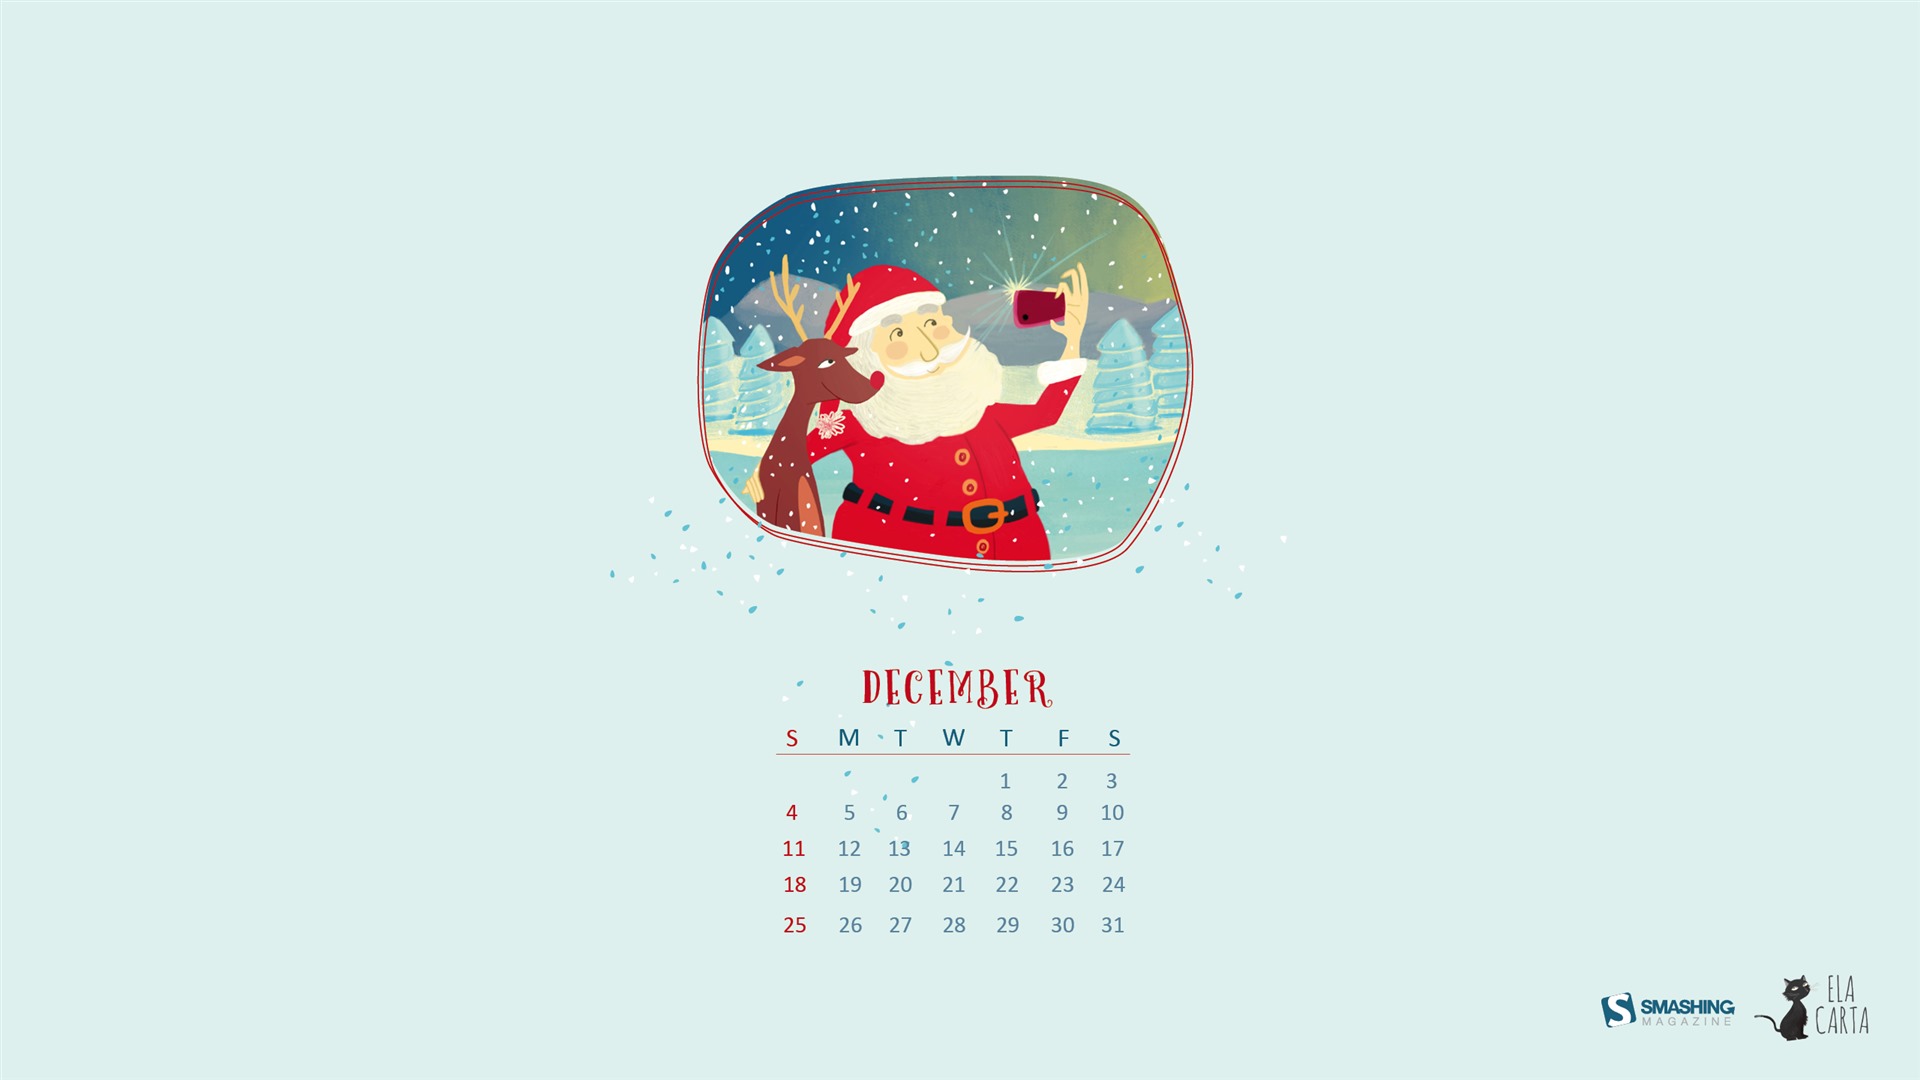 2016年12月 圣诞主题月历壁纸(一)15 - 1920x1080